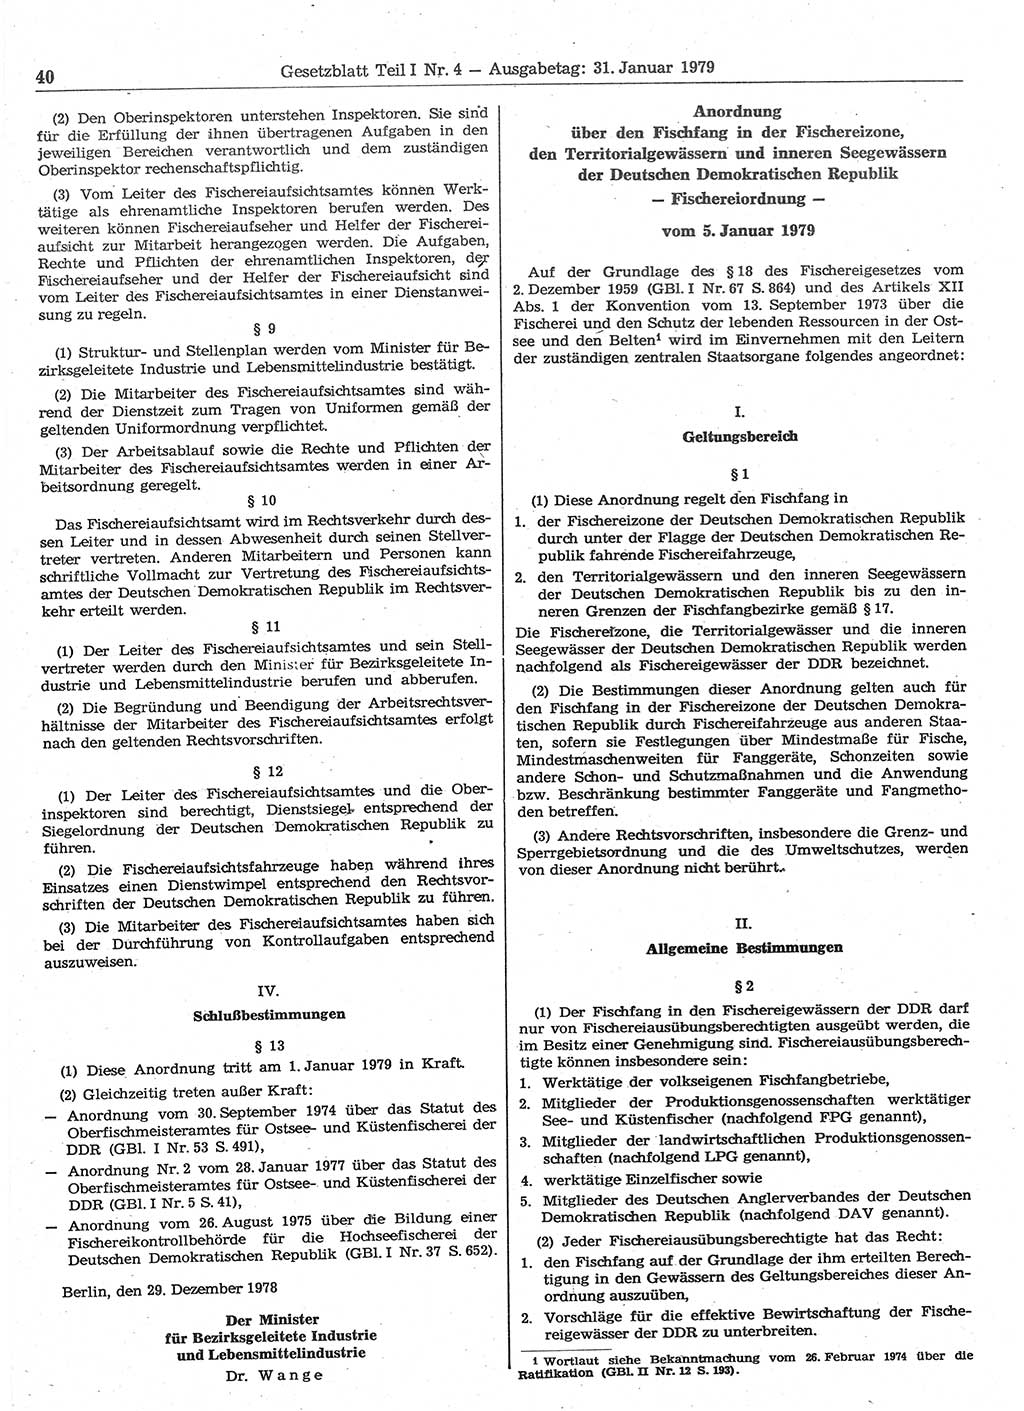 Gesetzblatt (GBl.) der Deutschen Demokratischen Republik (DDR) Teil Ⅰ 1979, Seite 40 (GBl. DDR Ⅰ 1979, S. 40)